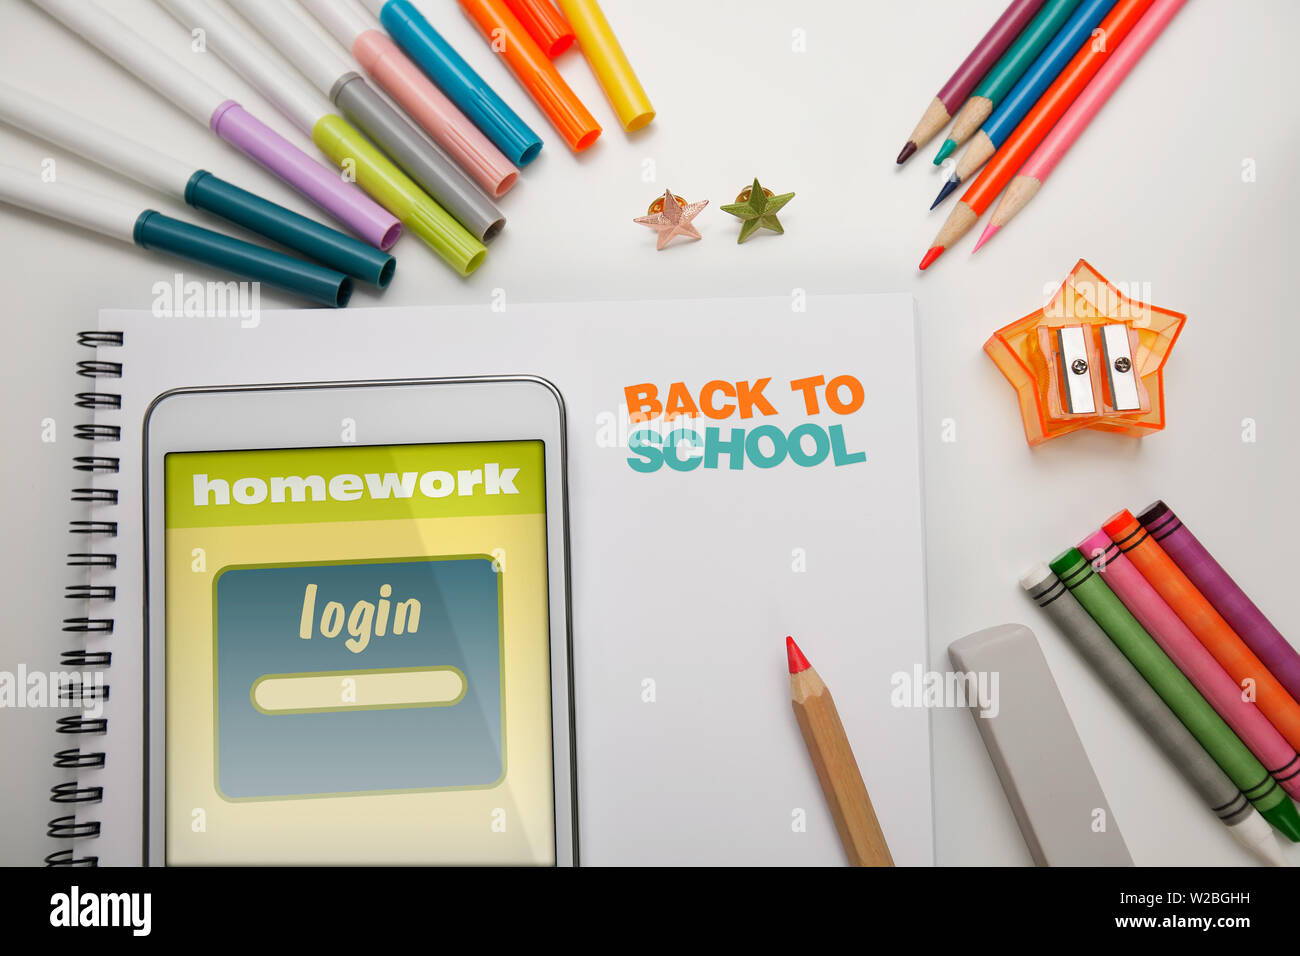 Un studenti escursioni organizzate con forniture scolastiche per il ritorno a scuola che comprende una compressa con sito web login per i compiti a casa e marke colorati Foto Stock